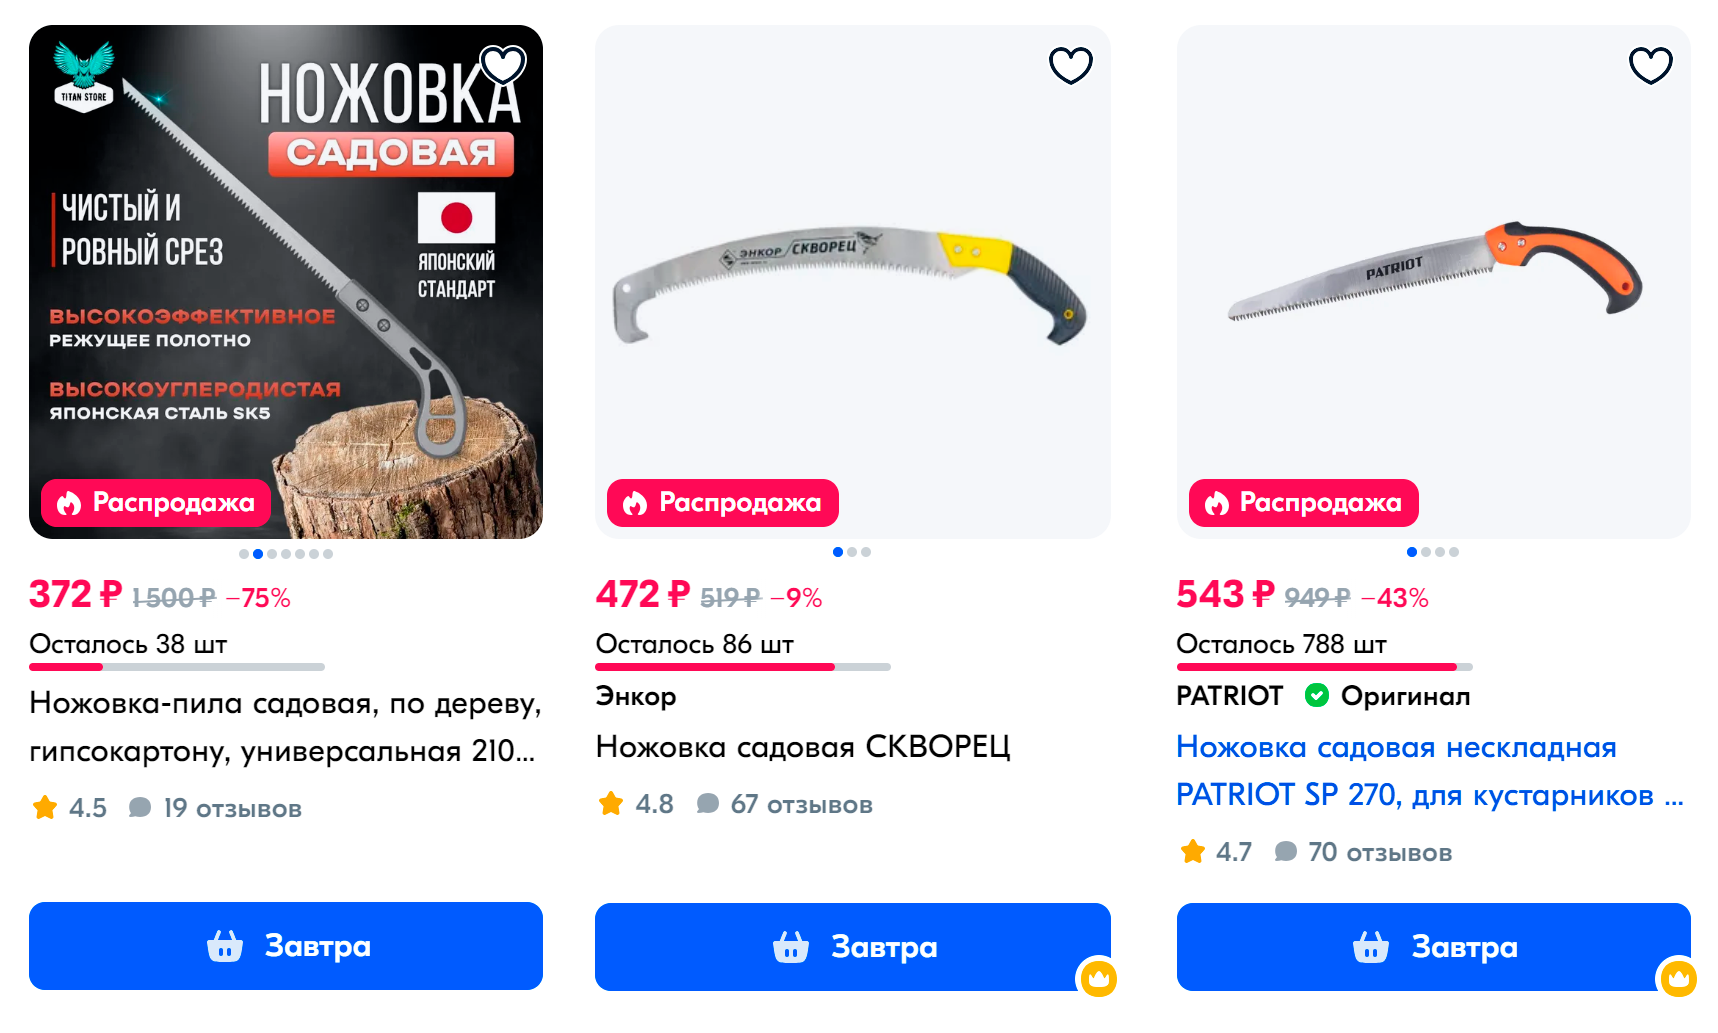 Ножовки можно купить на маркетплейсах, но хорошо бы подержать ее в руке перед покупкой — она должна лежать удобно. Источник: ozon.ru